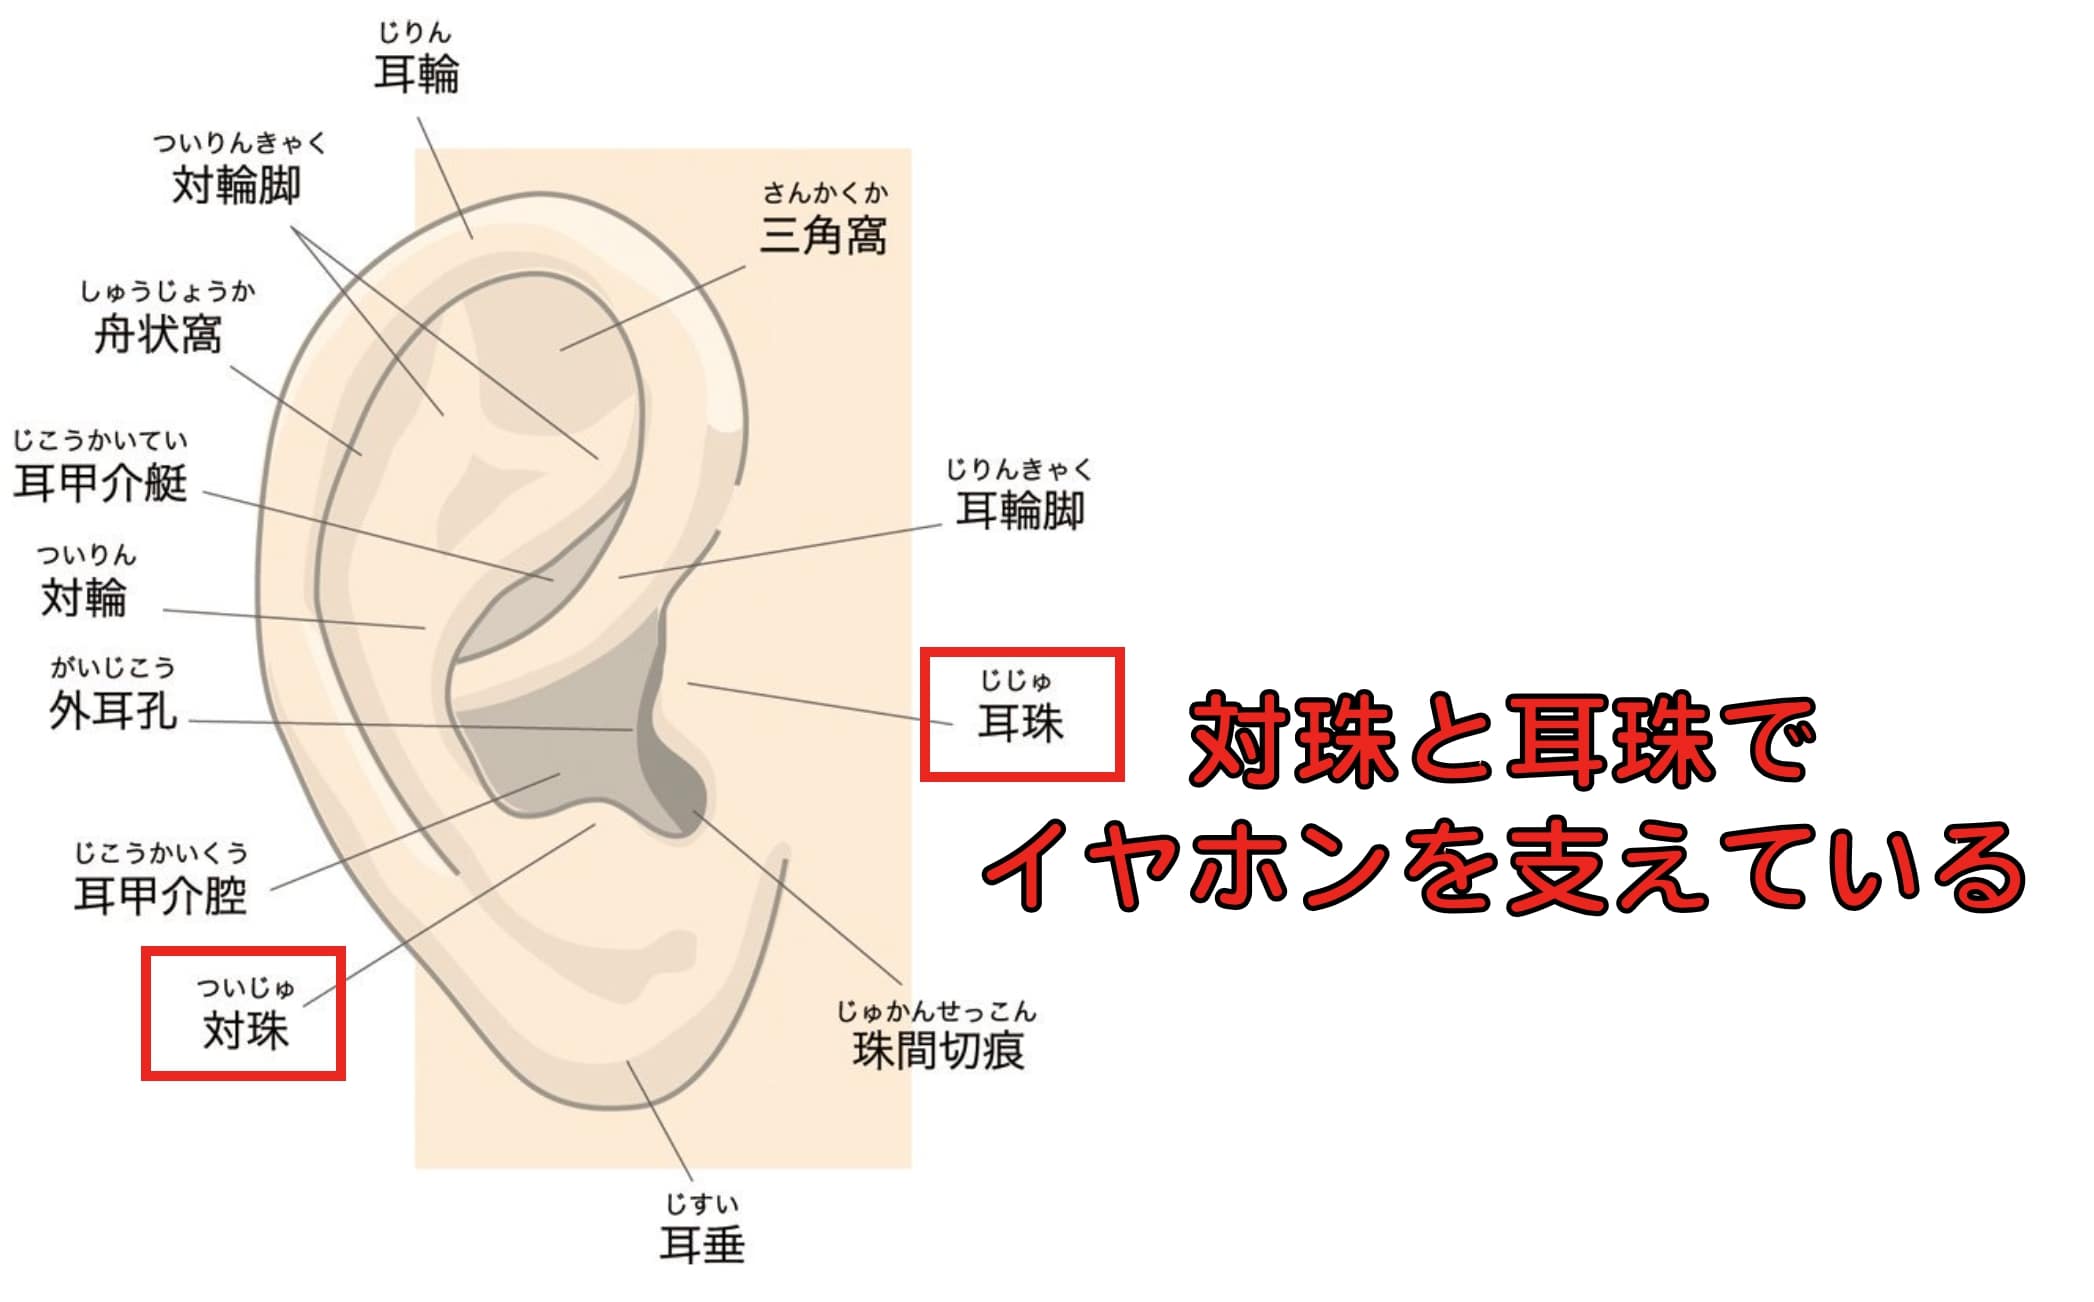 ワイヤレスイヤホンが落ちやすい耳の特徴は、対珠と耳珠が小さい